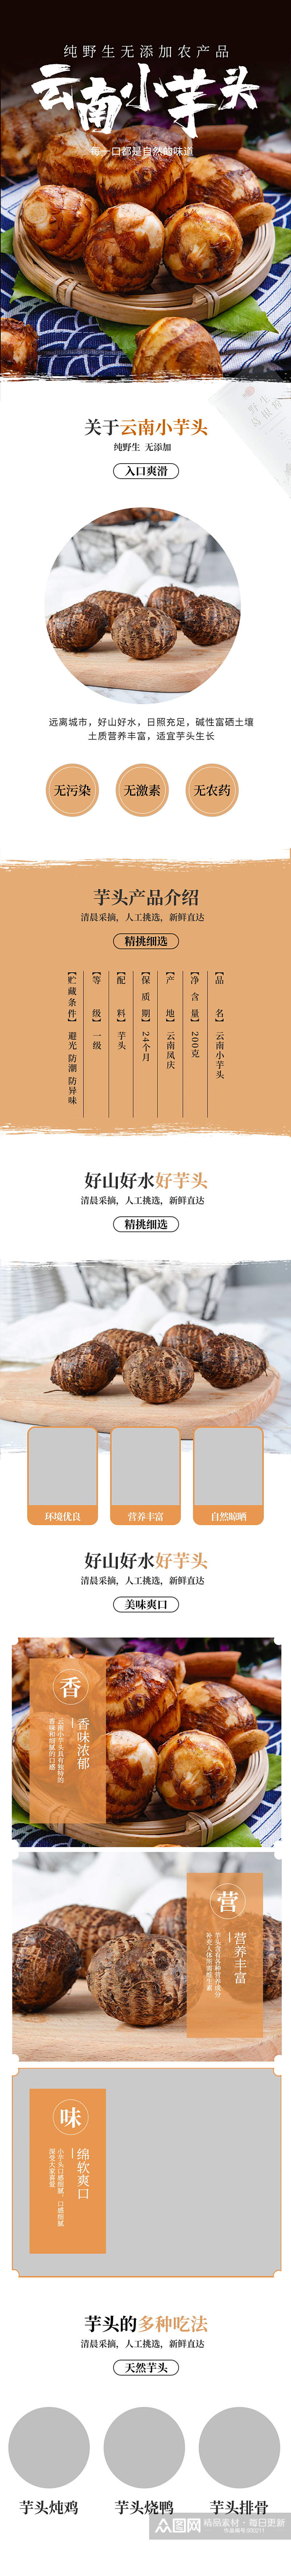 云南小芋头食品农产品详情页素材